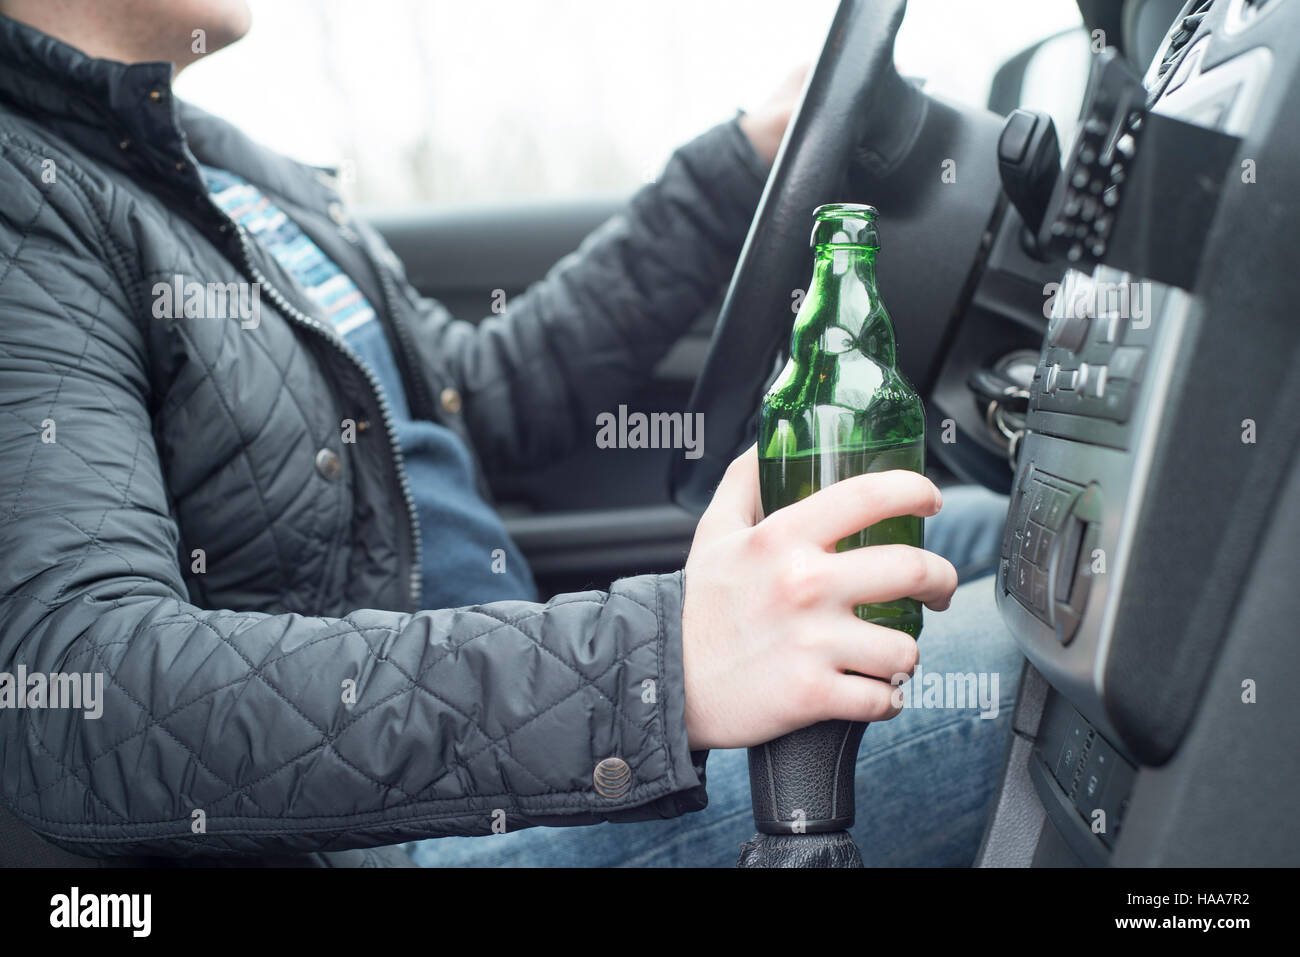 Jeune homme au volant de sa voiture alors que la consommation d'alcool Banque D'Images